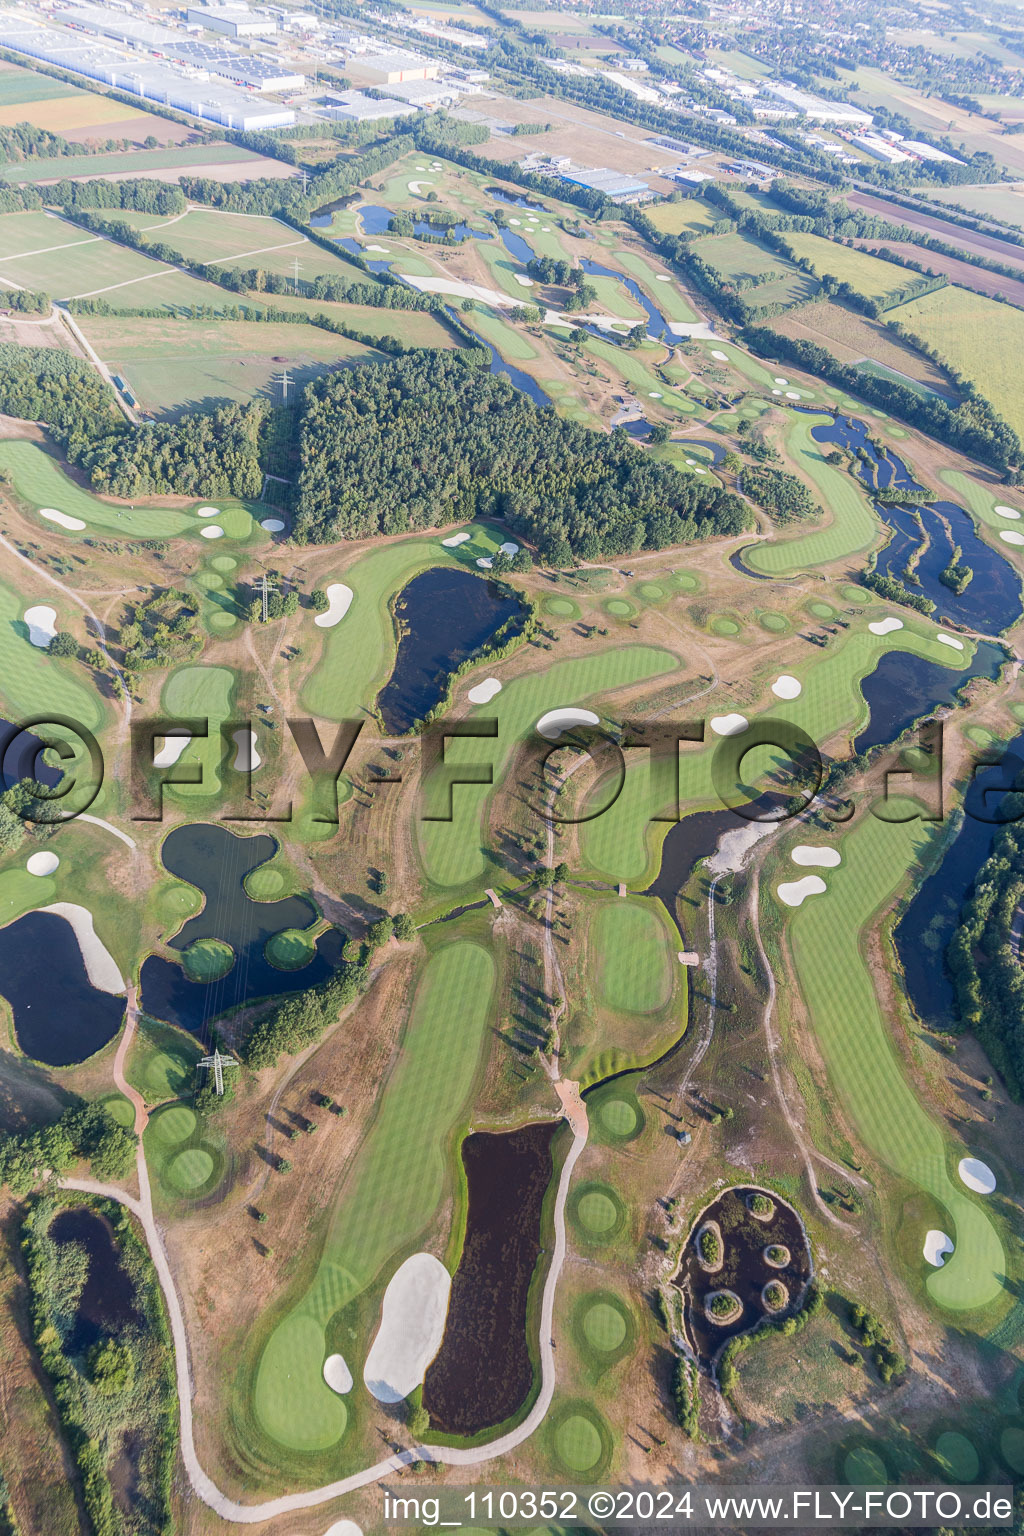 Terrain du parcours de golf Green Eagle à Winsen (Luhe) dans le département Basse-Saxe, Allemagne depuis l'avion